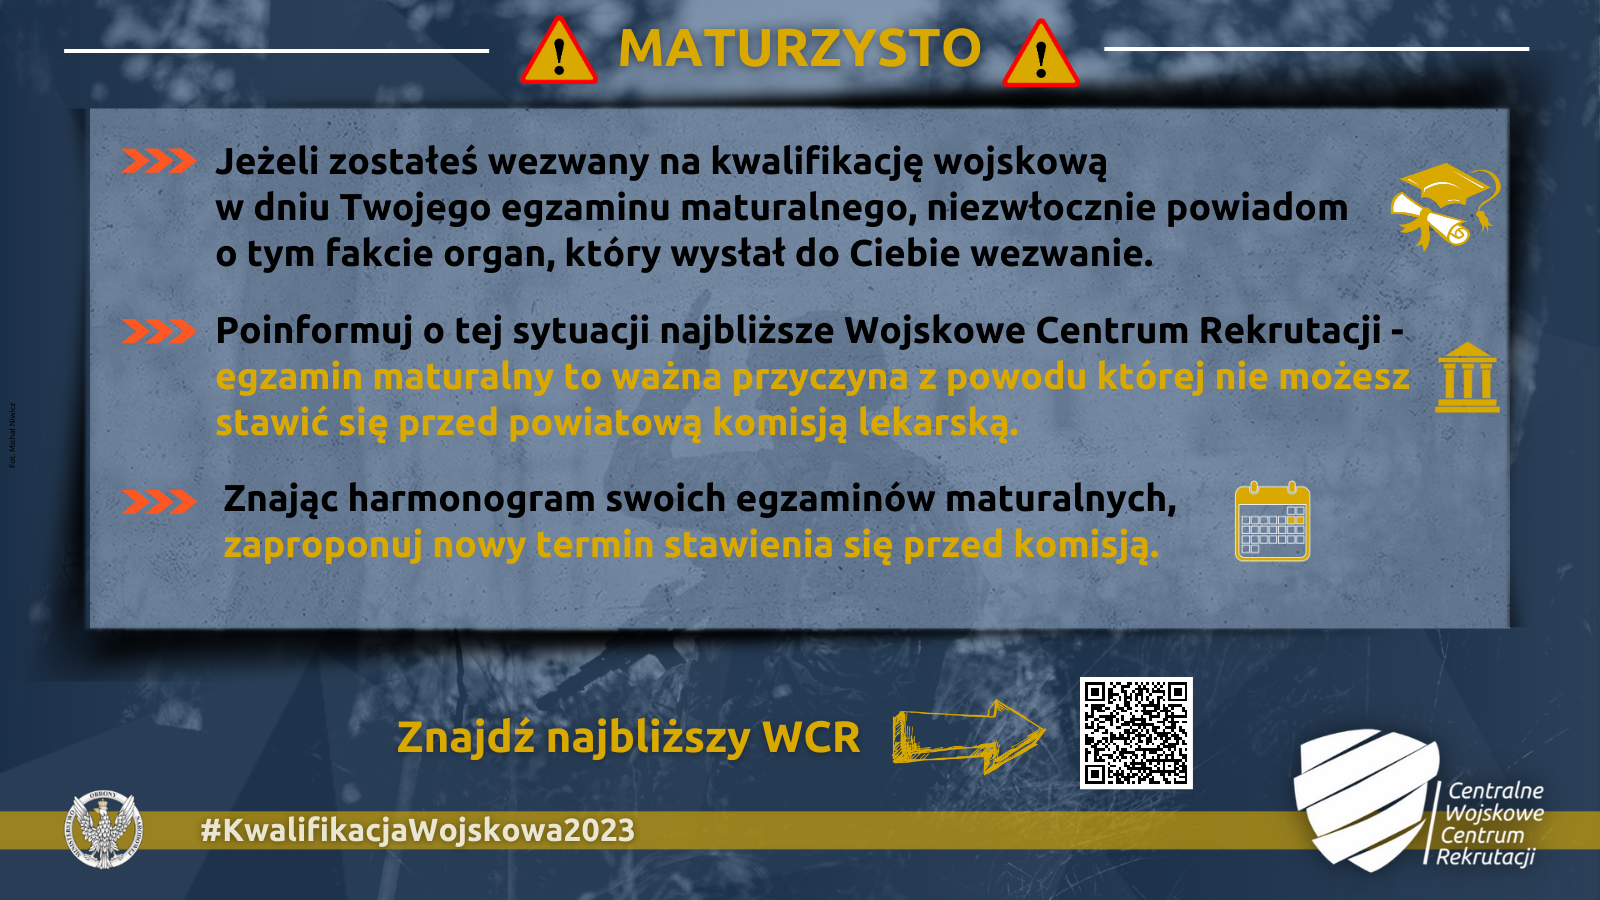 Wojskowe Centrum Rekrutacji  we Wrocławiu - wiadomość do zdających egzaminy maturalne